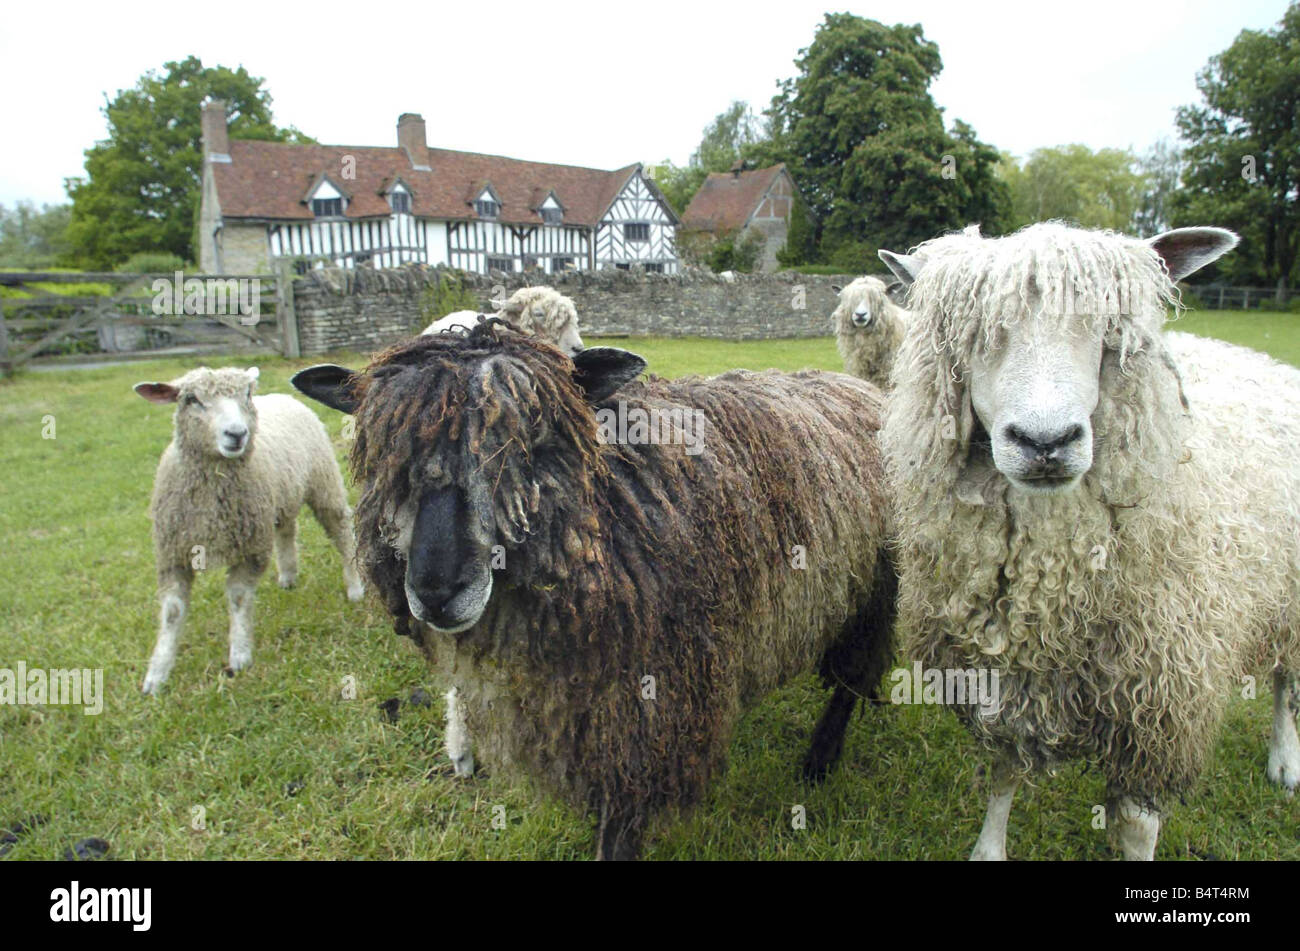 Die Cotswold Shakespeare Schafherde sind die Hauptattraktionen auf der bevorstehenden großen Schafe Show läuft bei Mary Arden s Haus und Landschaft Museum Teil der Herde infront von Oalmers Farm, früher bekannt als Mary Arden s Haus gesehen werden Stockfoto